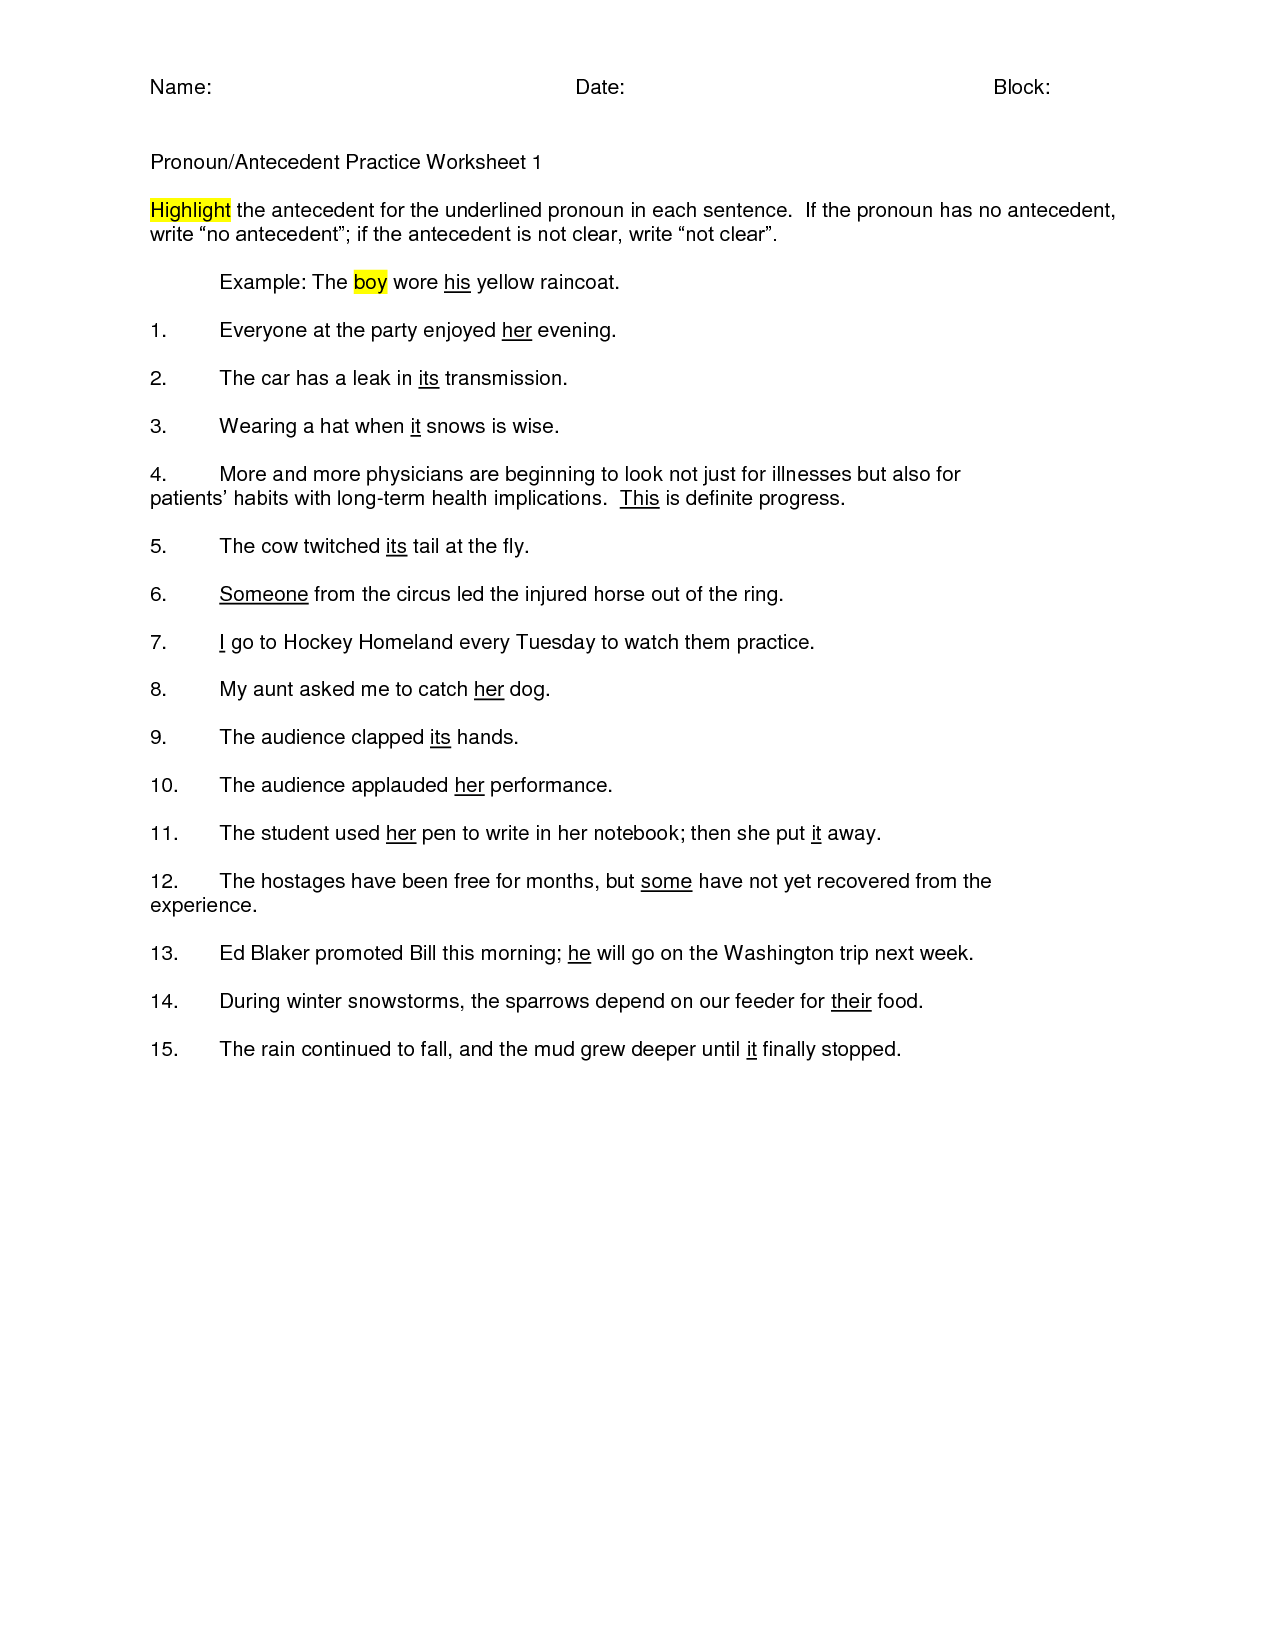 indefinite-pronoun-agreement-worksheet